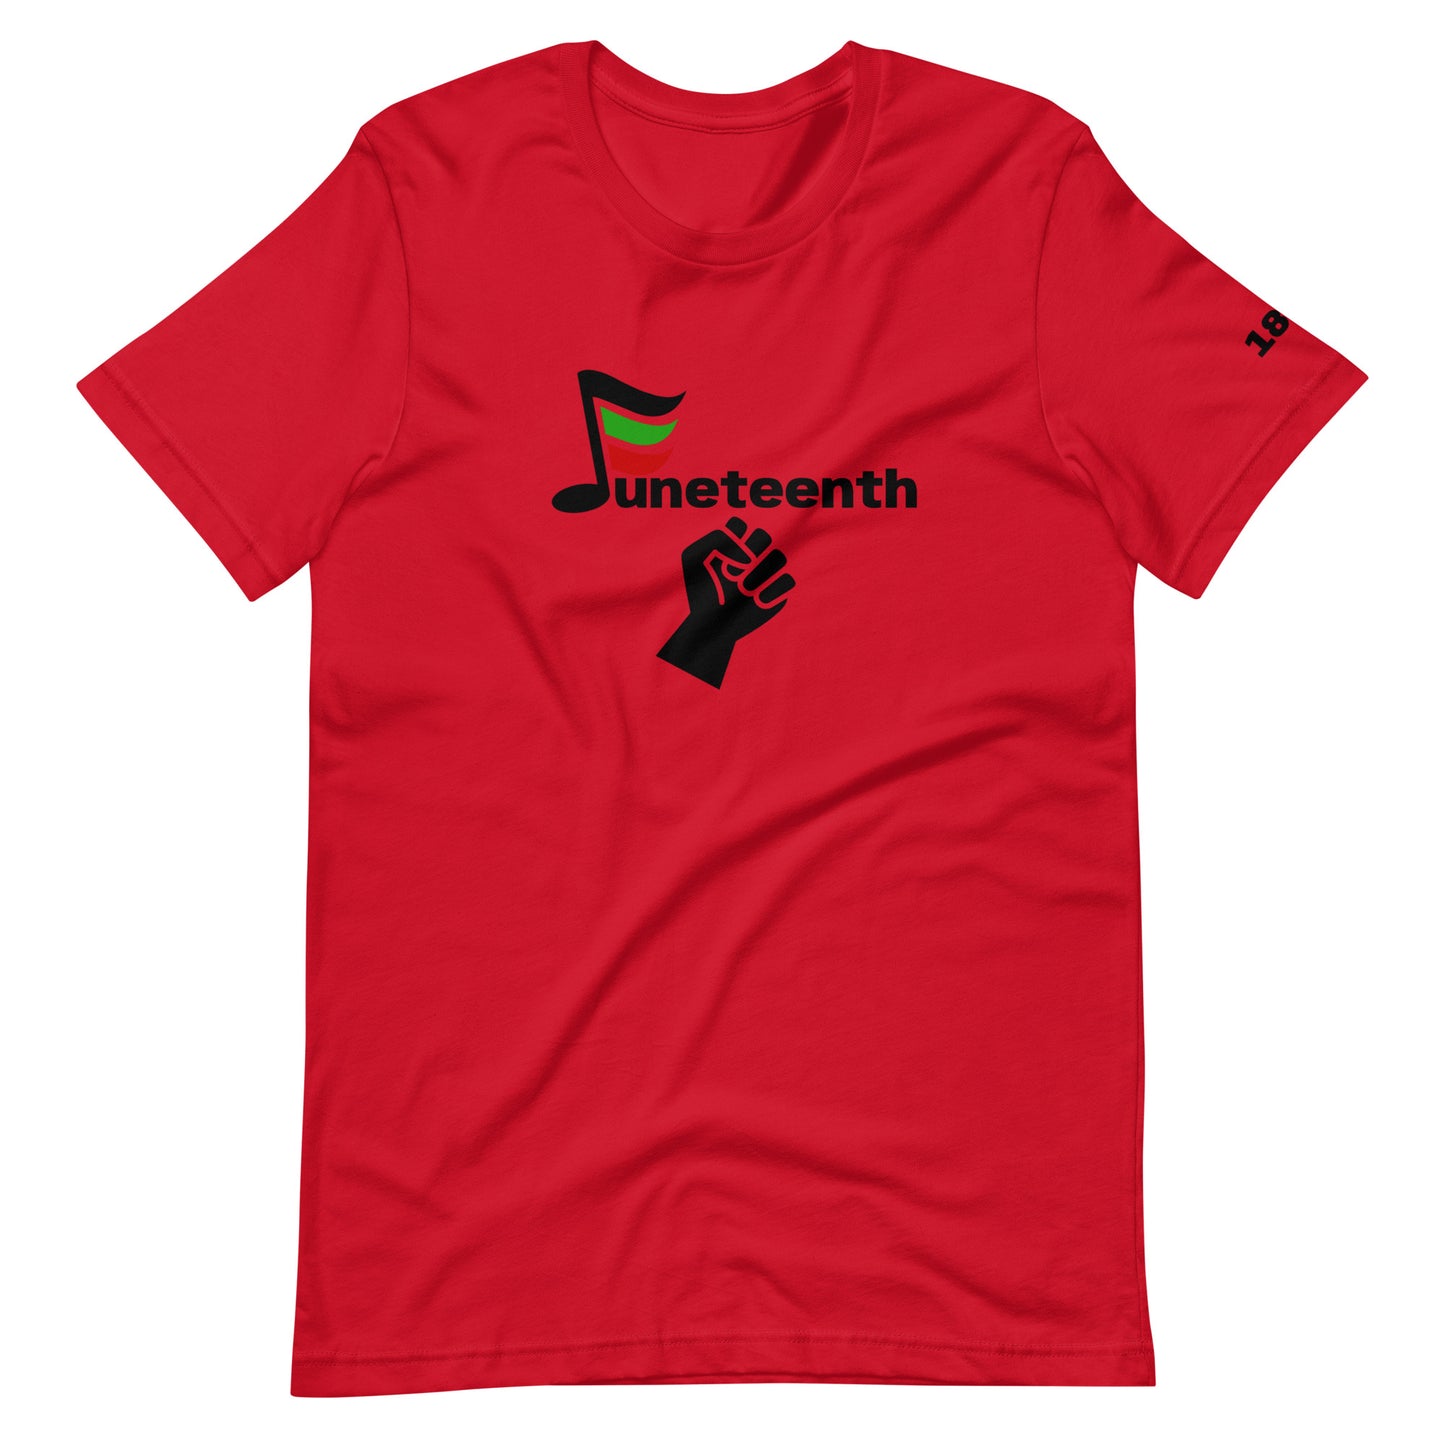 JE Juneteenth t-shirt